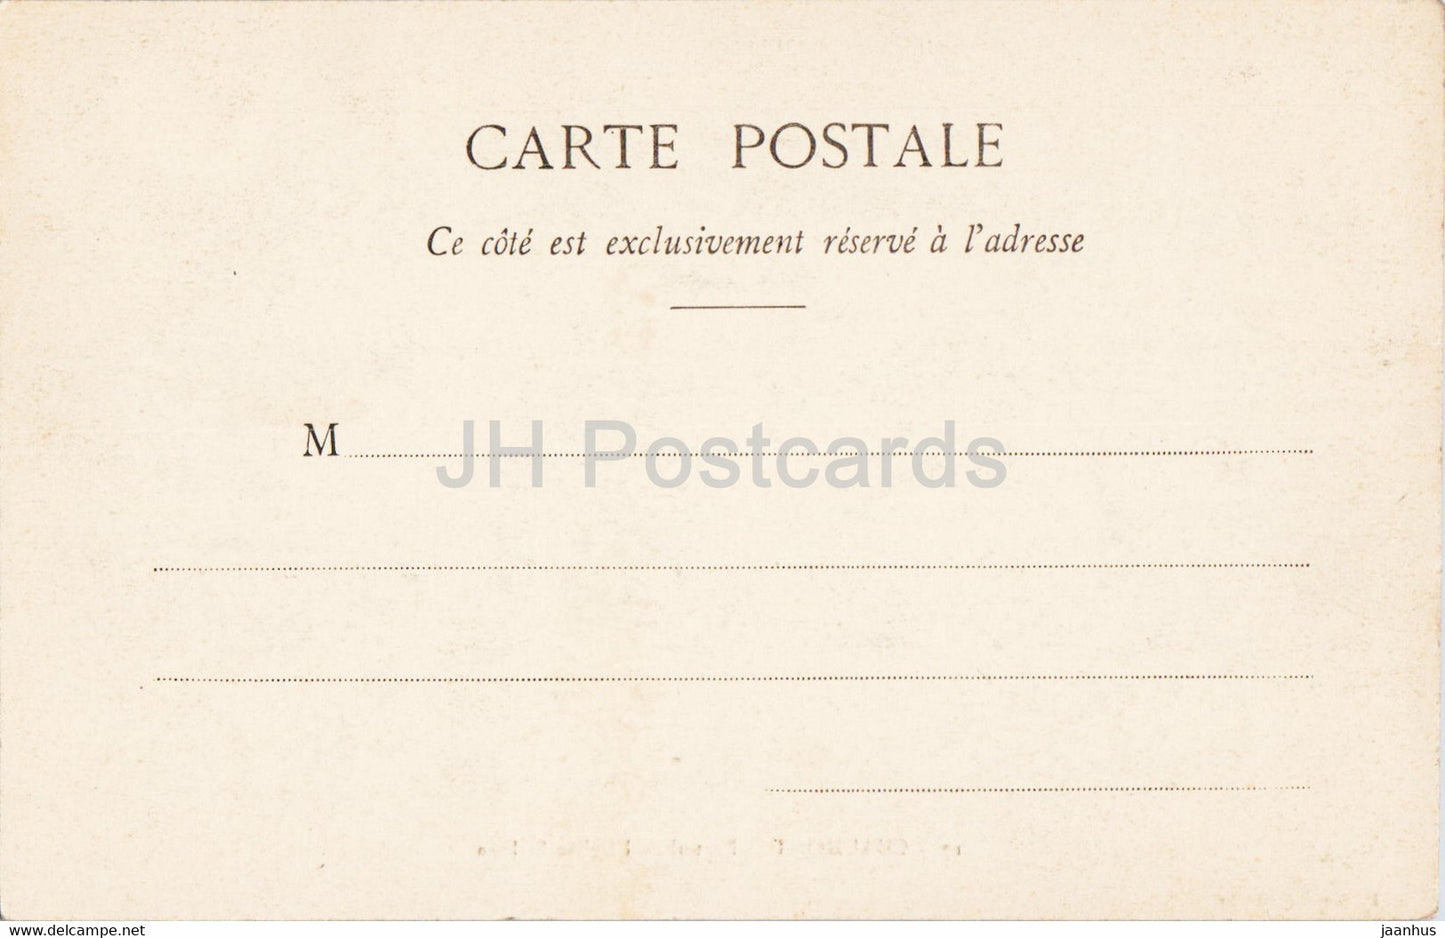 Chaumont - Portail de l'Eglise St Jean - église - 17 - carte postale ancienne - France - inutilisée